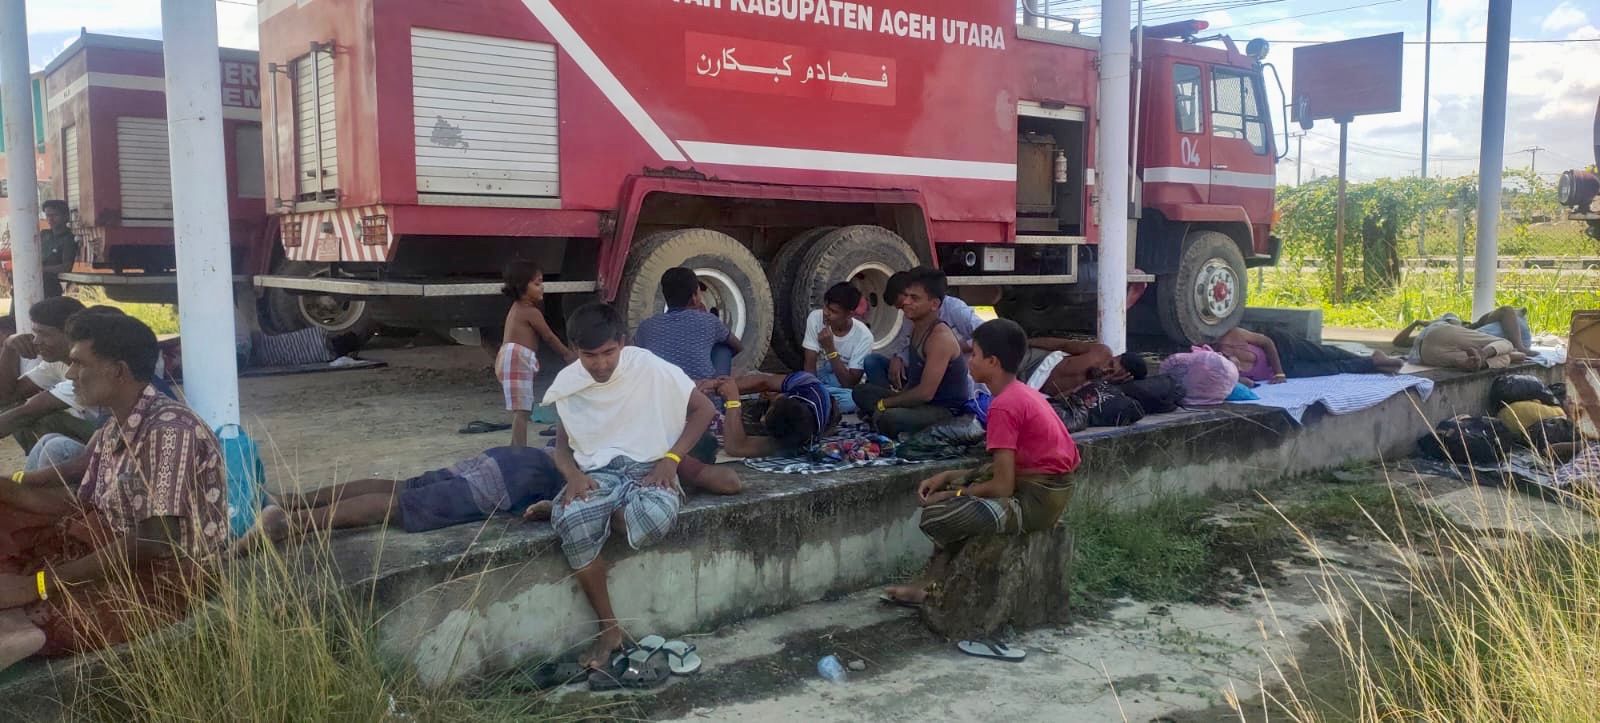 Ratusan Imigran Rohingya di Aceh Utara Dipindahkan ke Gedung Bekas Kantor Imigrasi Lhokseumawe